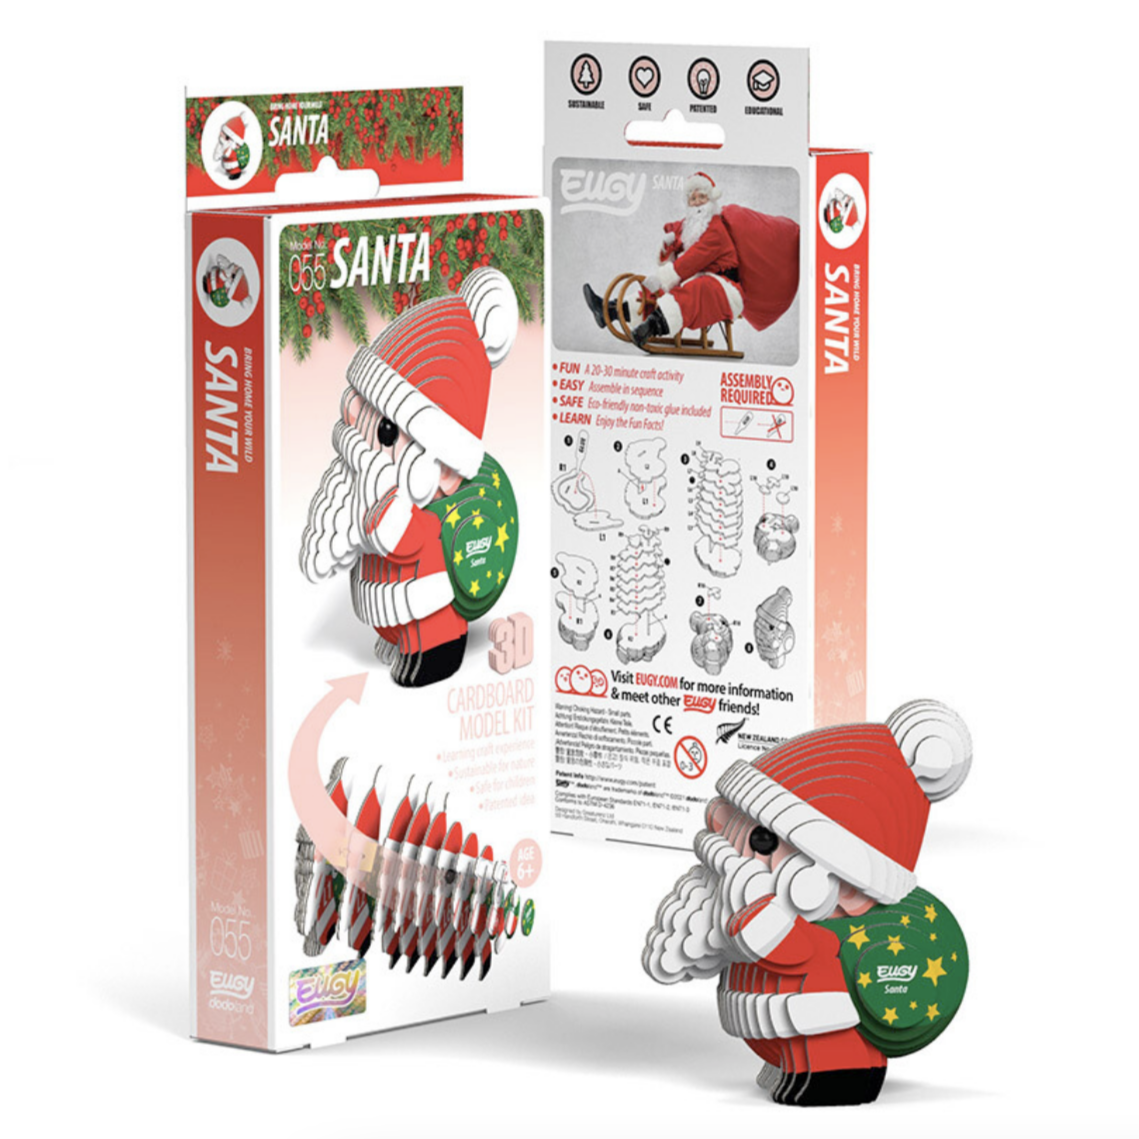 Santa 3-D model kit (6-14yrs)